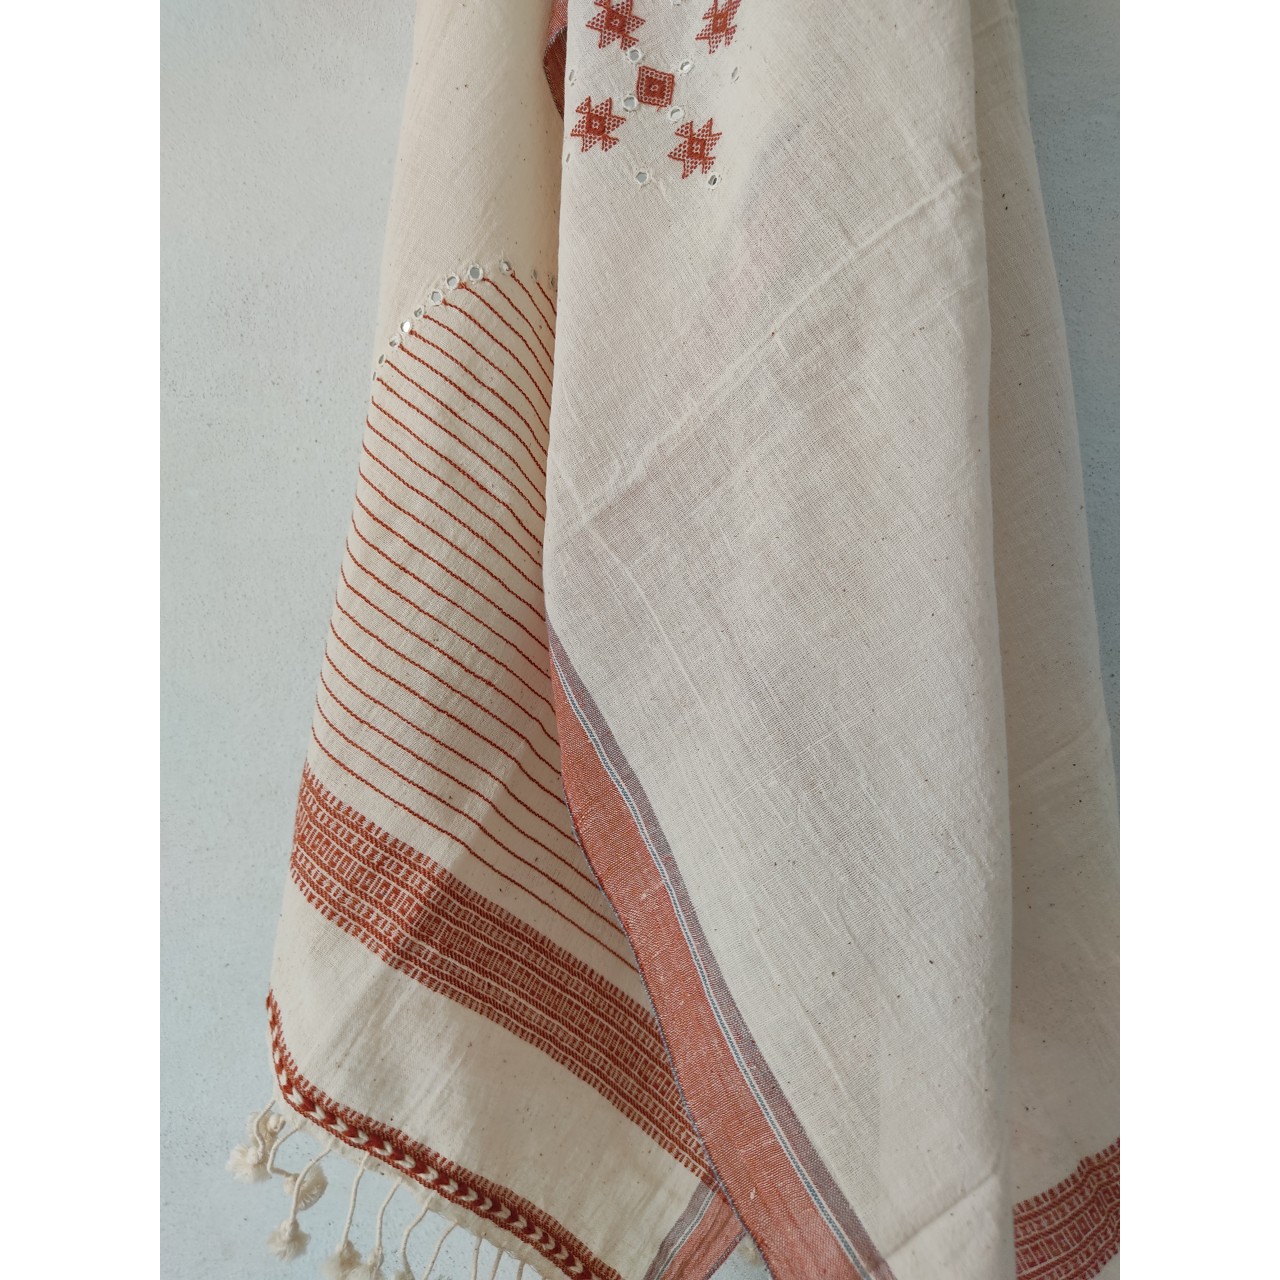 (303) Organic handspun kala cotton Natural dyed Kutchy stole with kala cotton extra weft, kala cotton motif from Kutch - Kora, off white, white, maroon